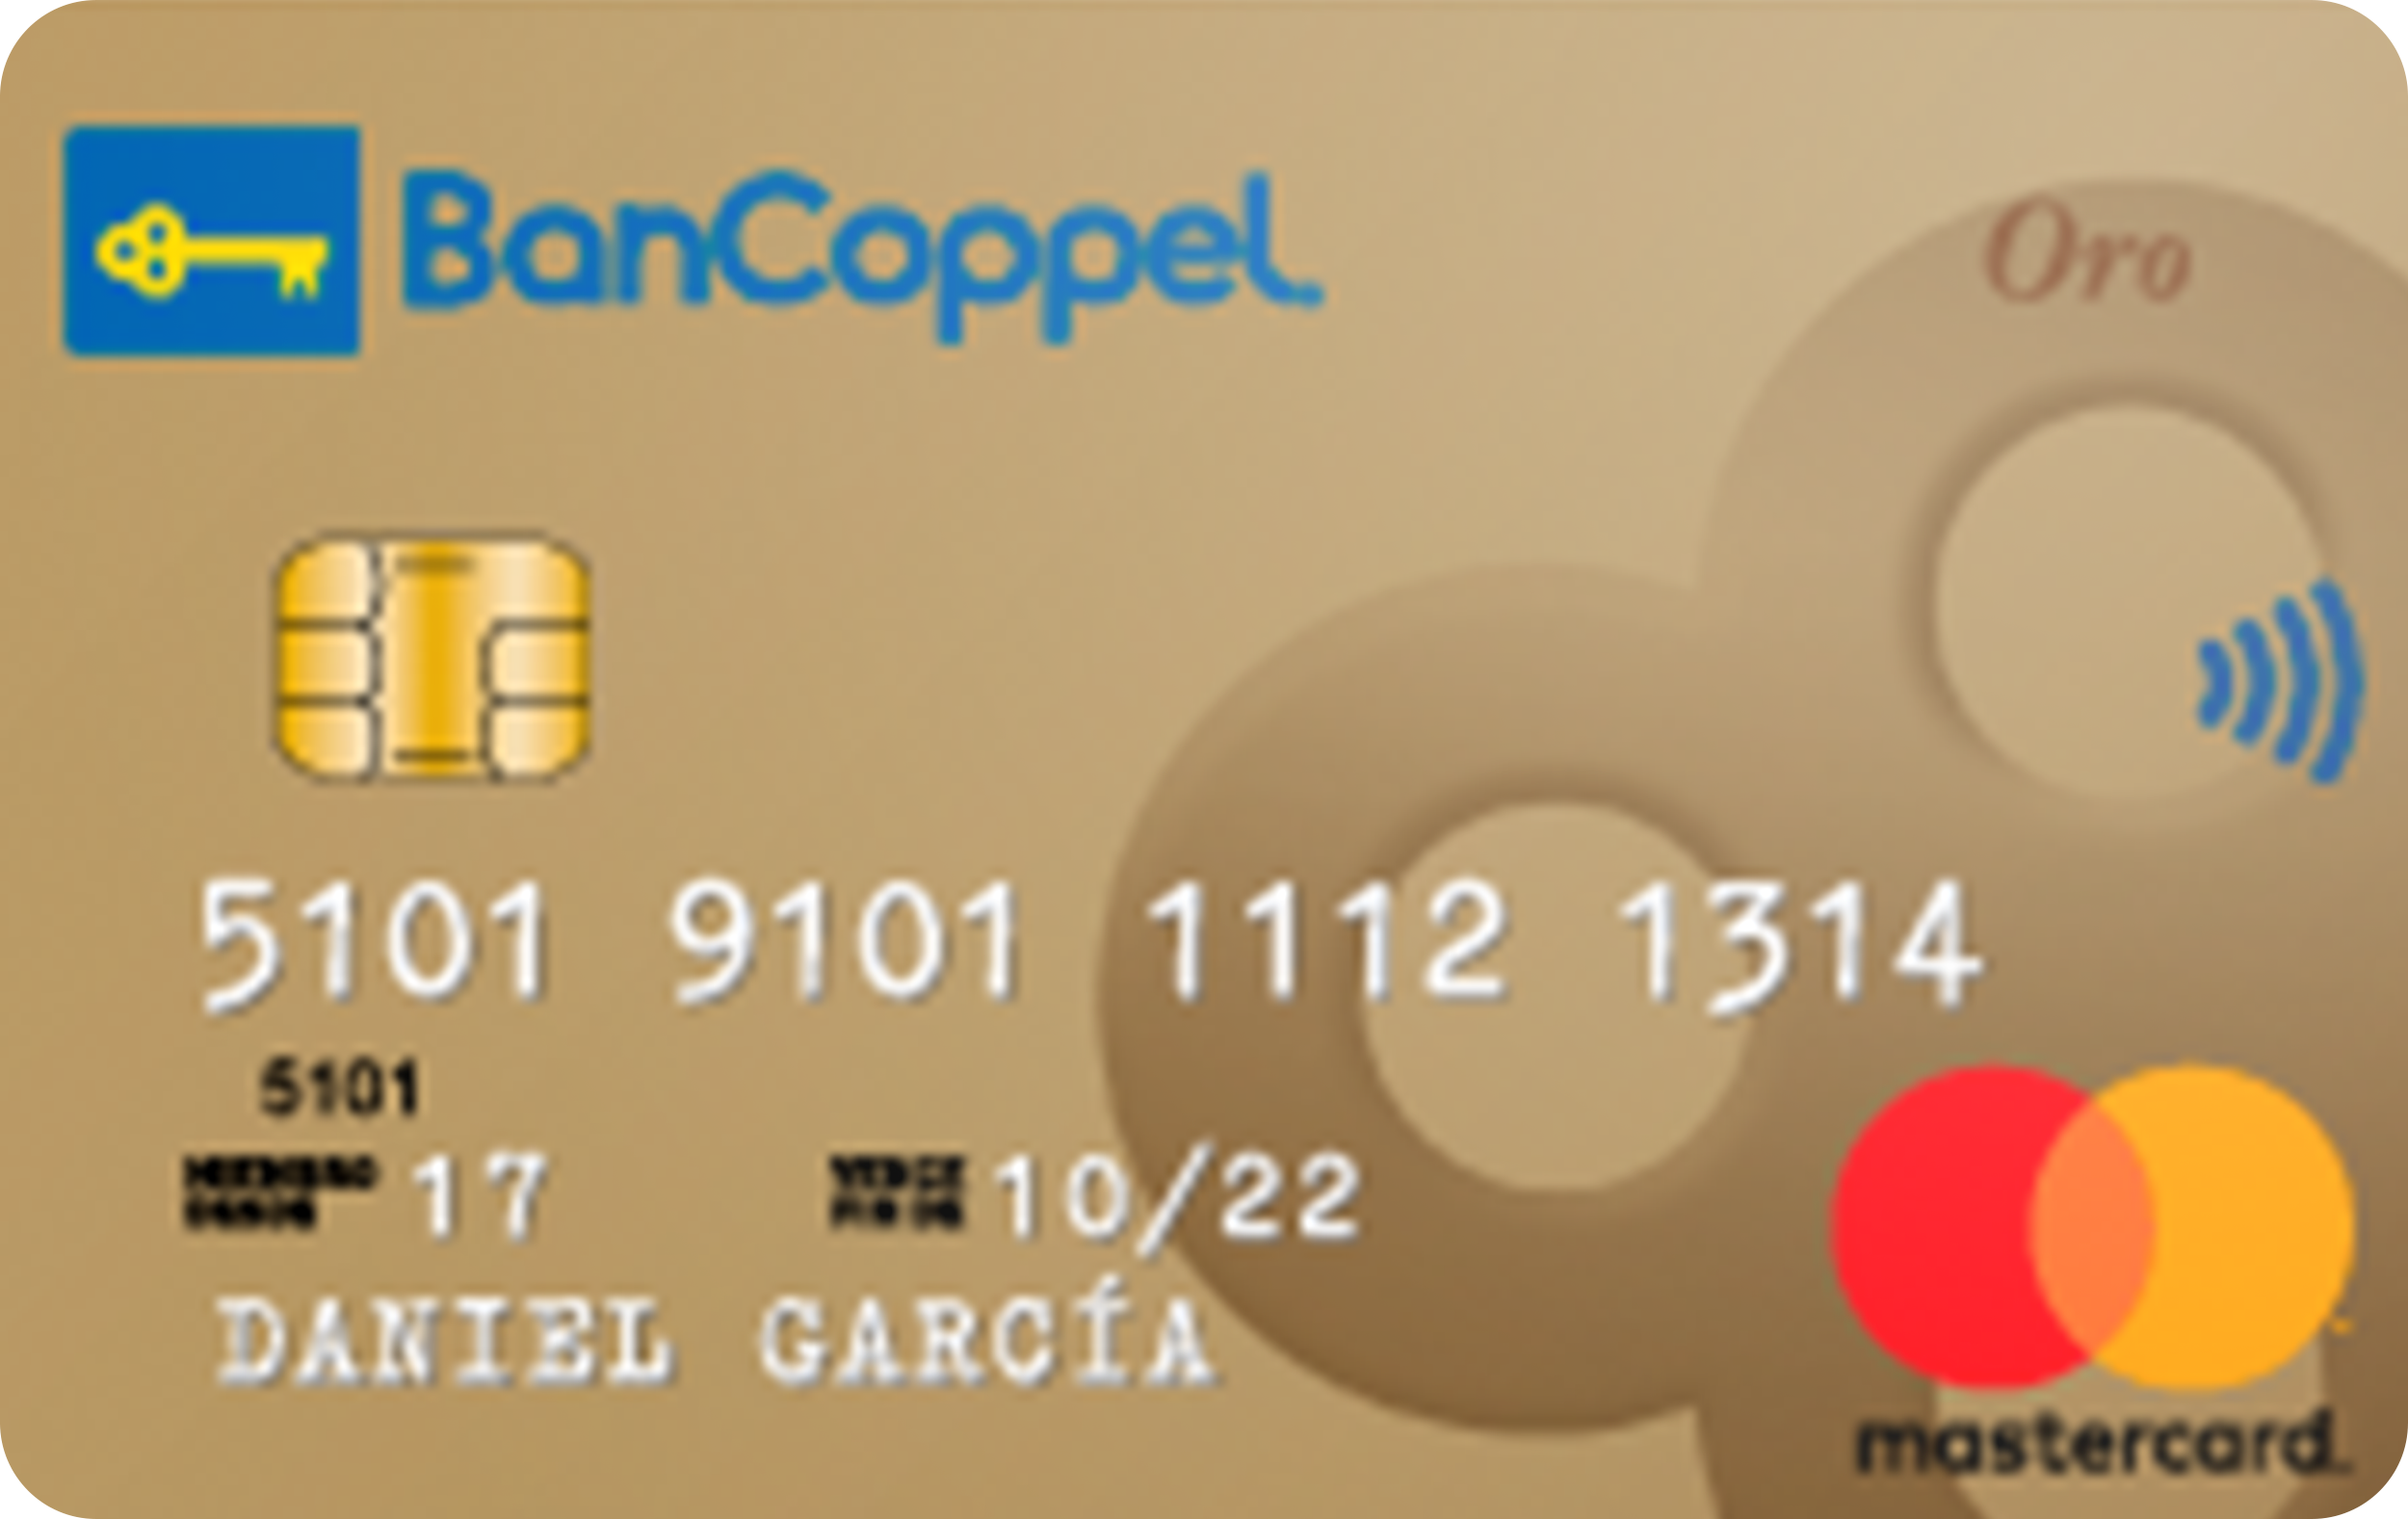 Tarjeta de Crédito Bancoppel Oro